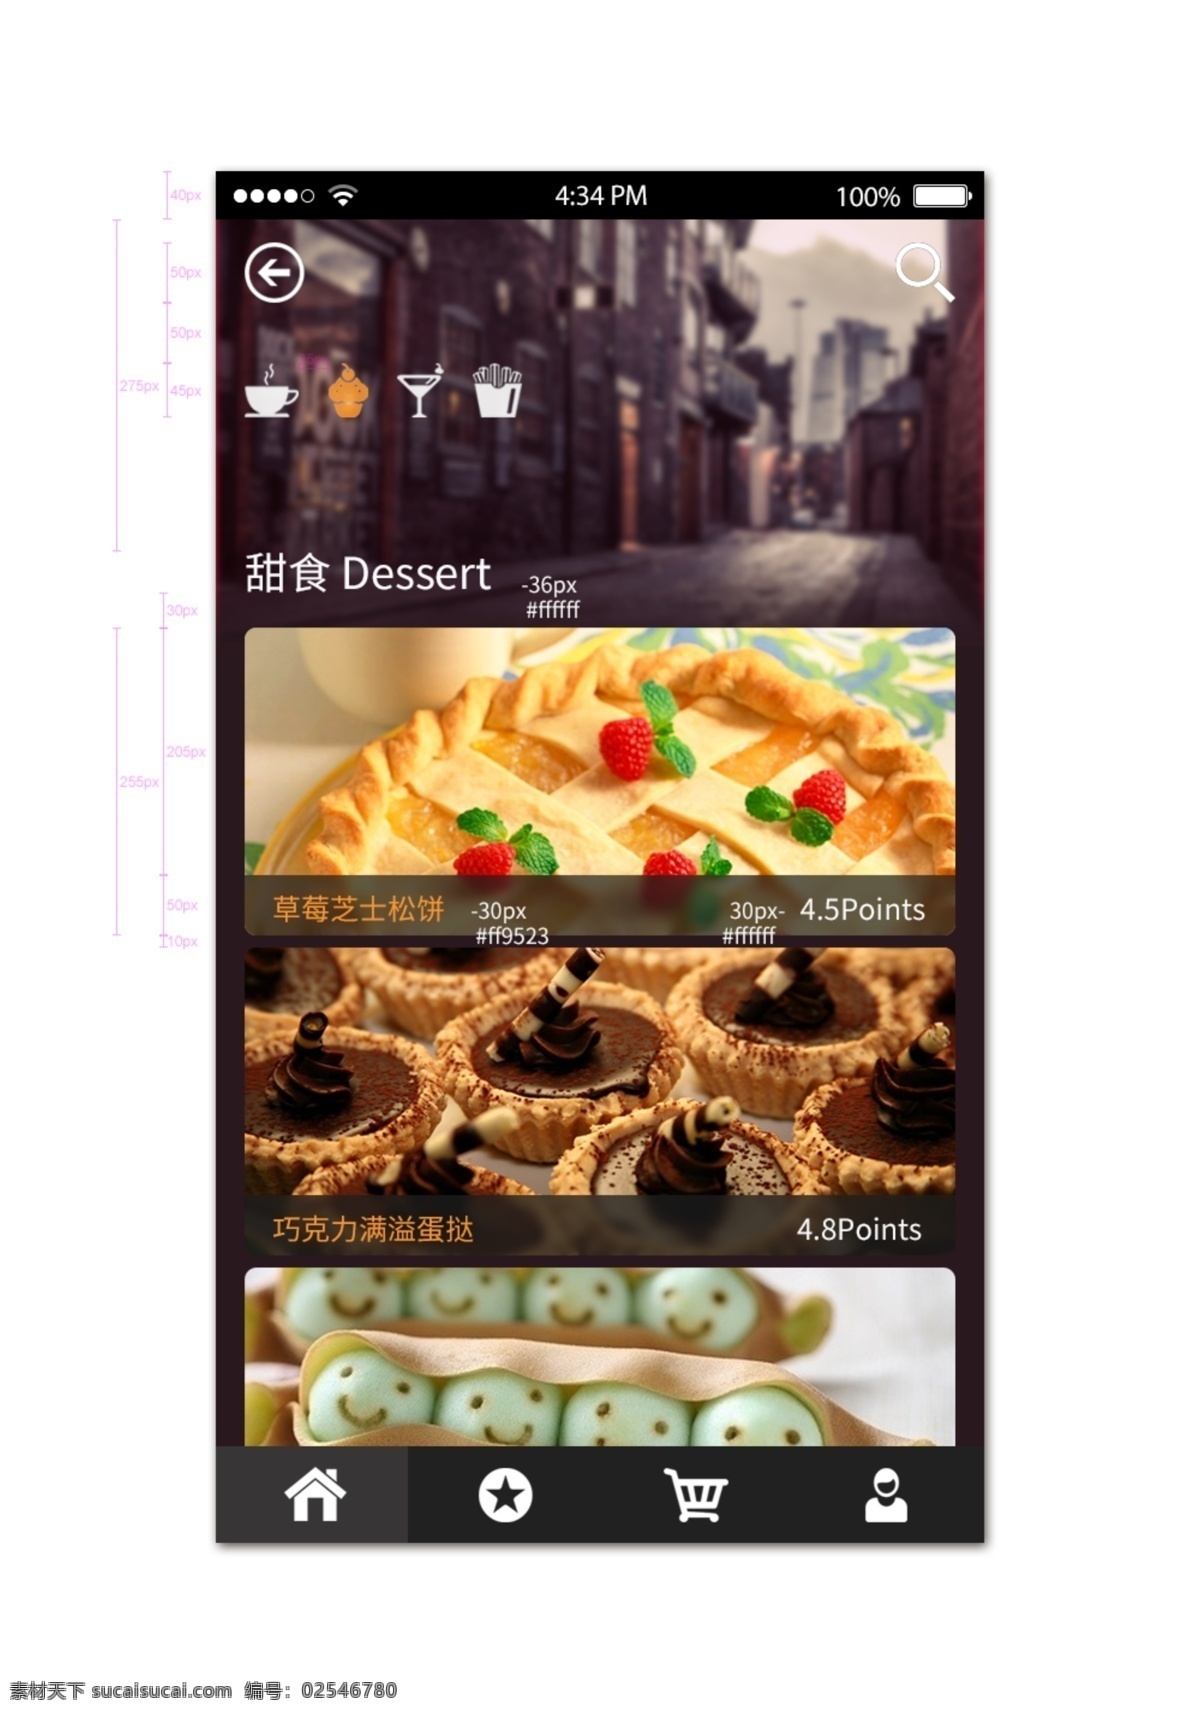 甜品屋 app菜单页 ui设计 美食 app ui 菜单页 白色